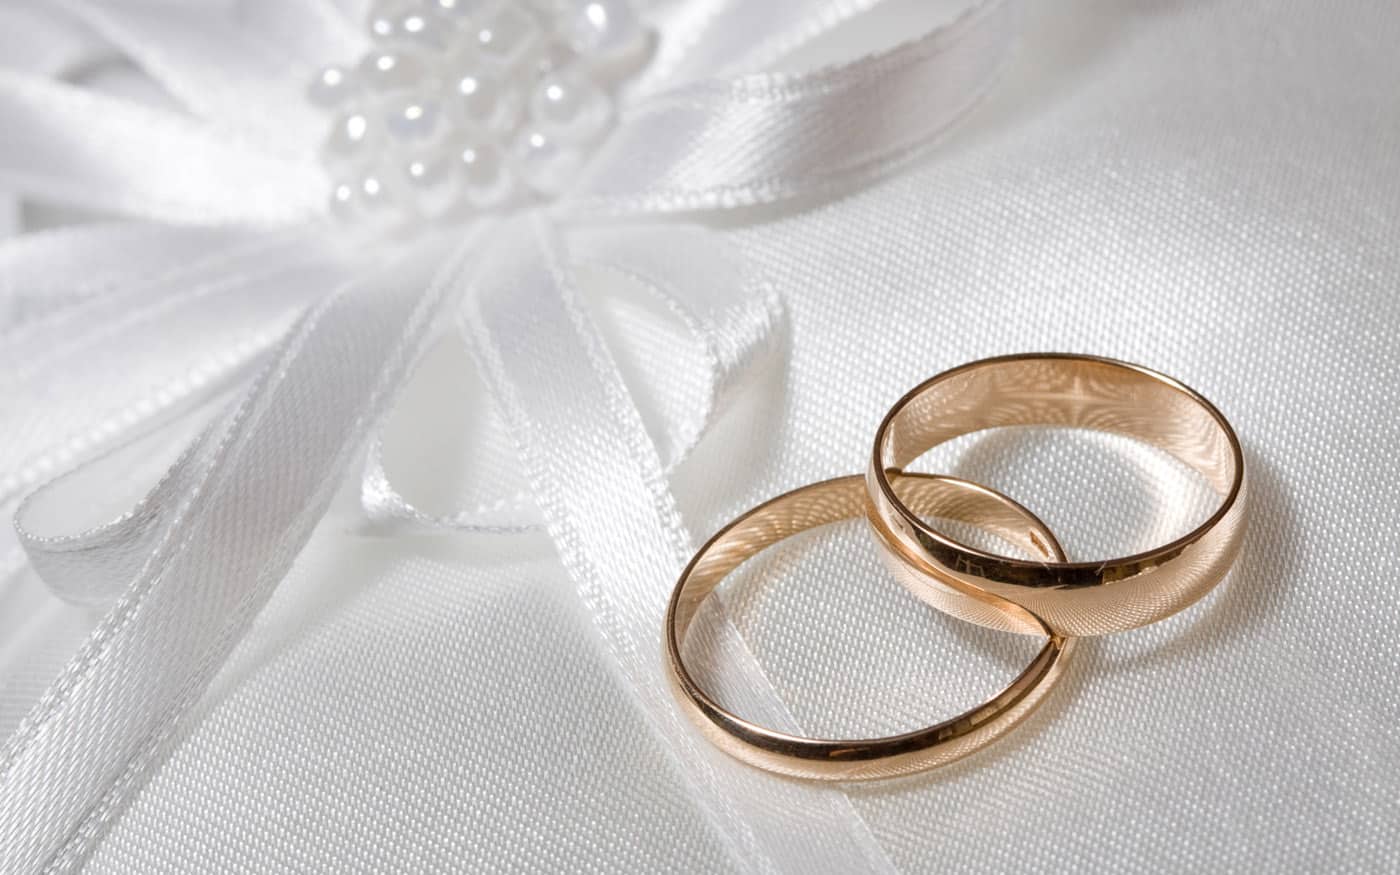 أجمل عبارات تهنئة بالزواج والخطوبة 2021 لمشاركتها فى مواقع التواصل الاجتماعي